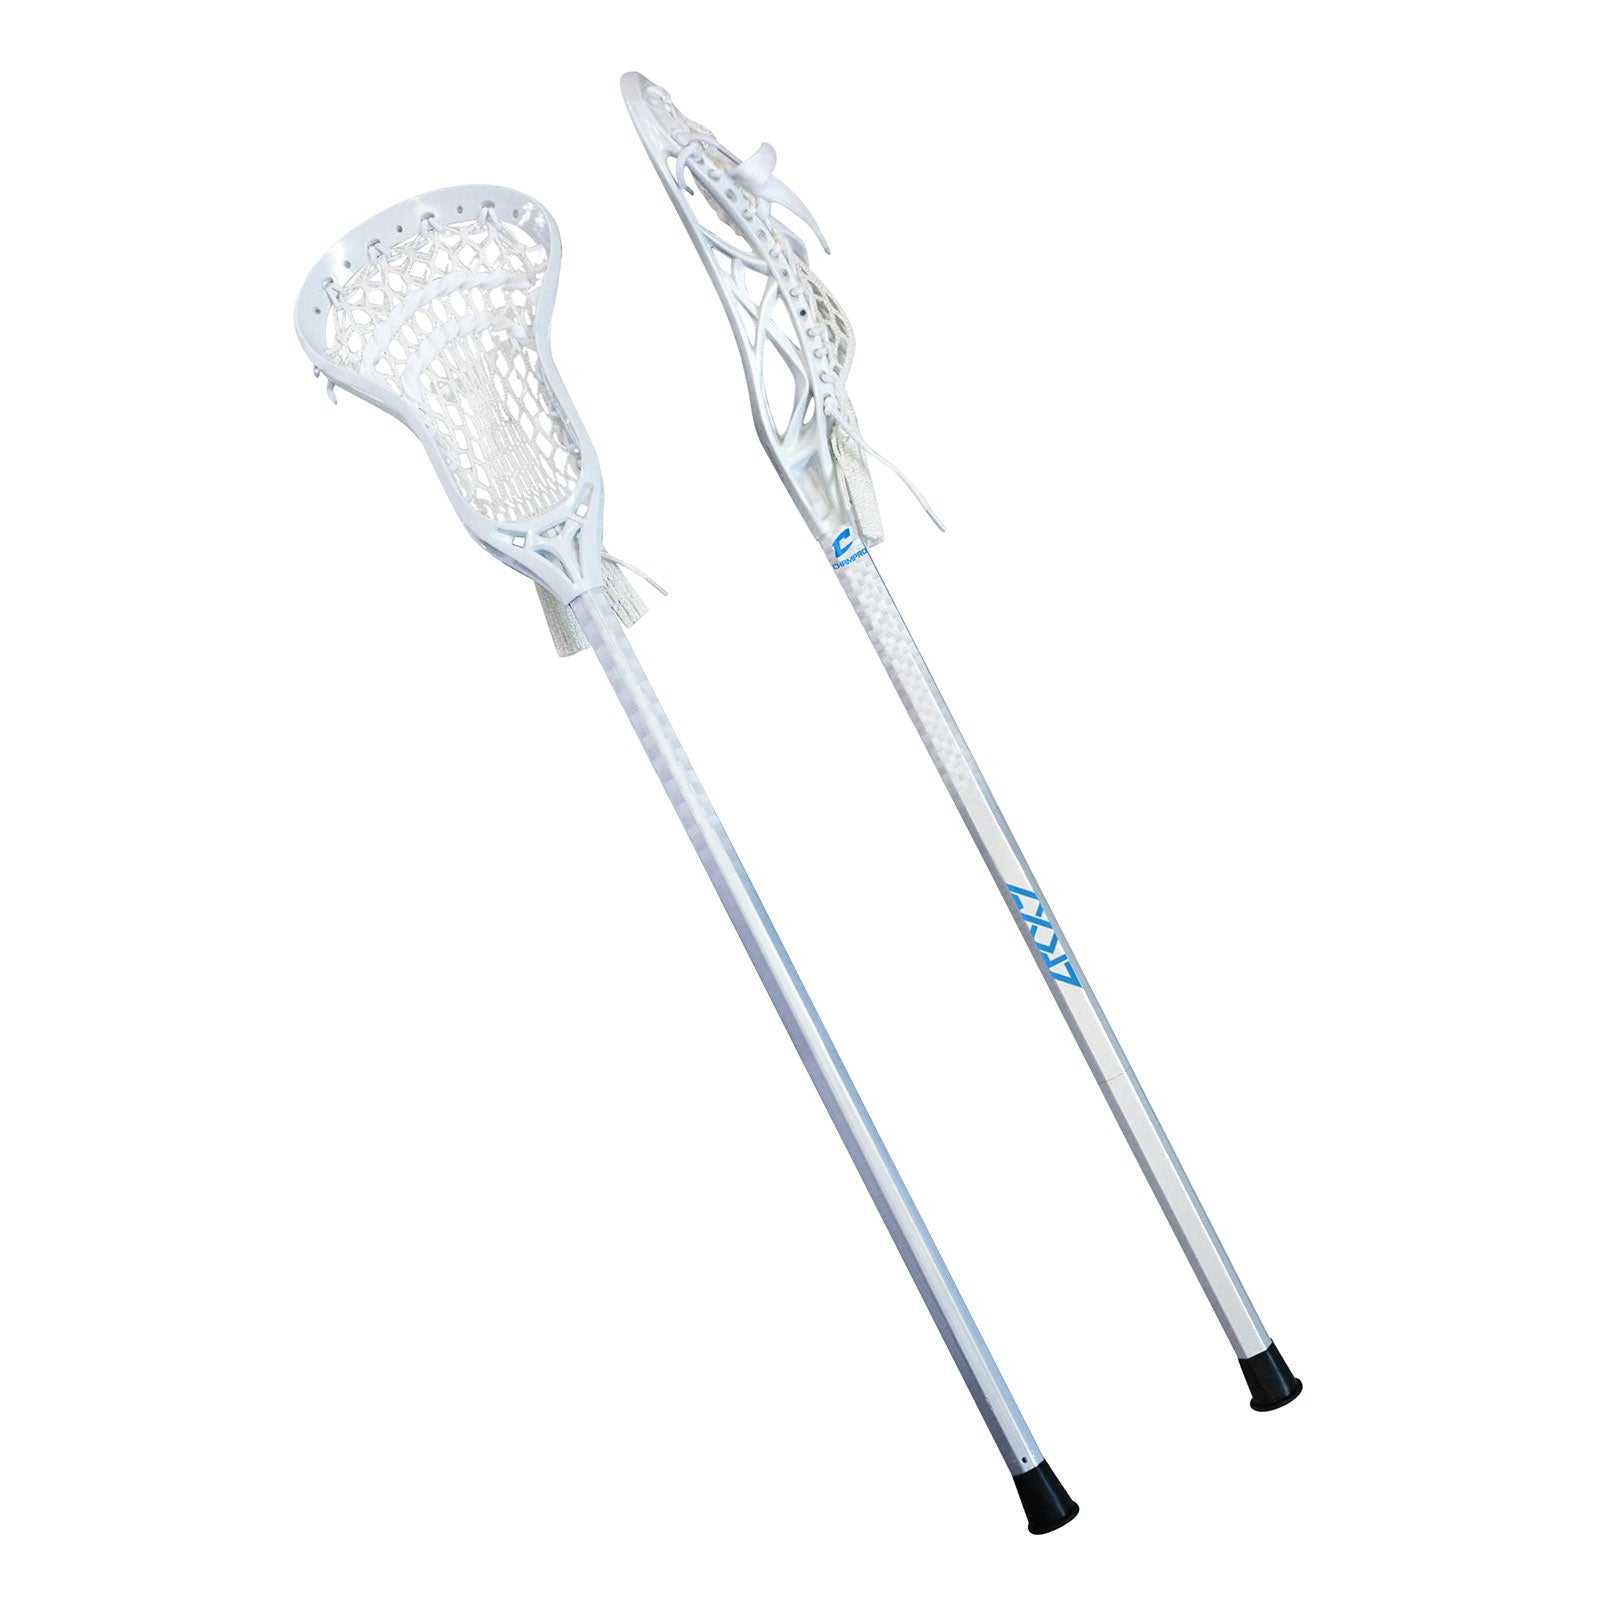 Champro LS2 Lacrosse Stick - White - HIT a Double